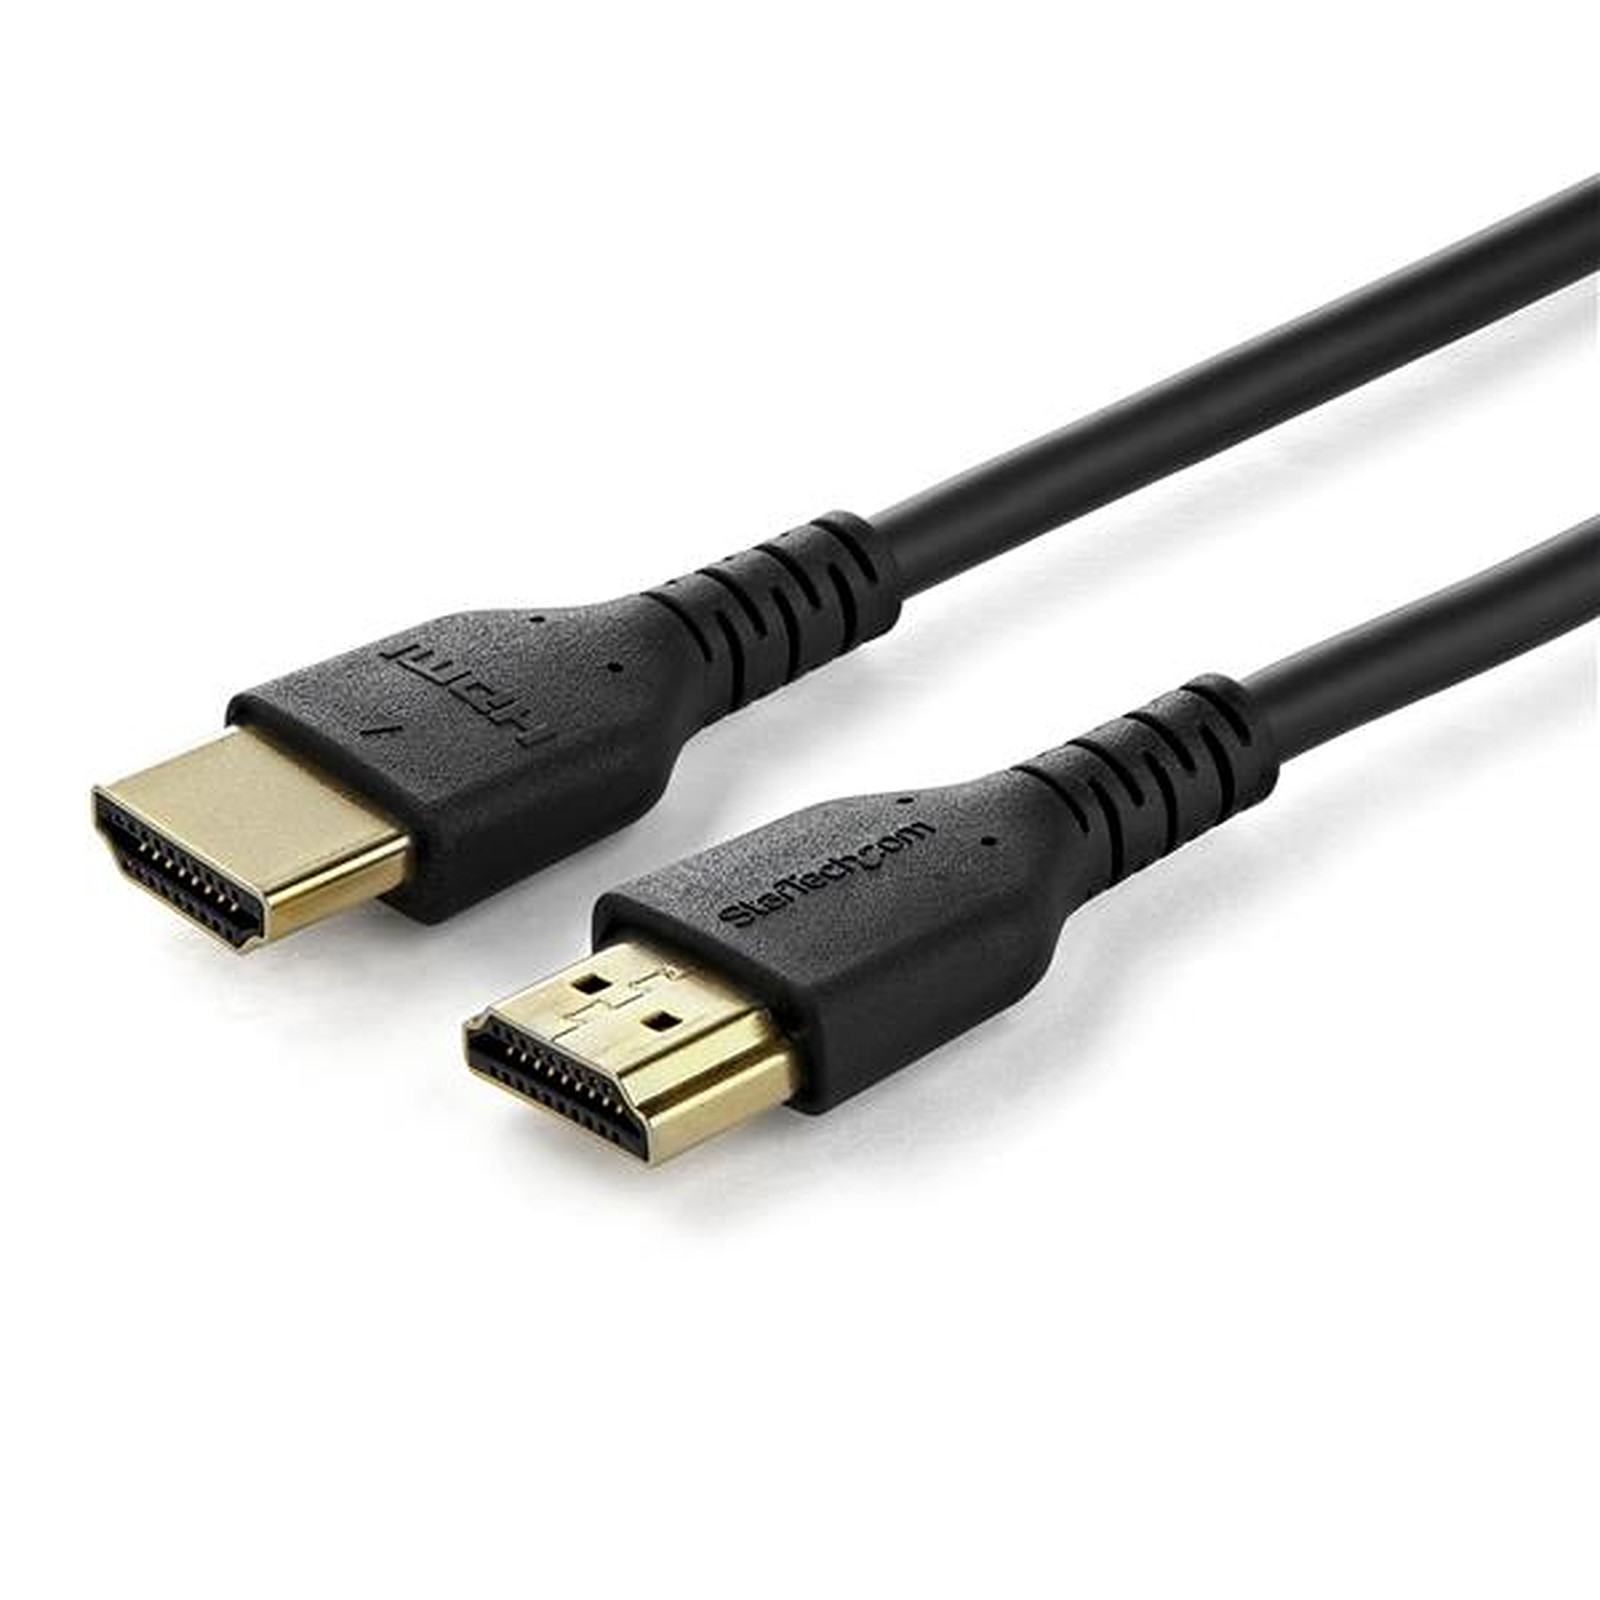 StarTech.com Cable HDMI 4K 60 Hz avec Ethernet - Premium - 2 m - HDMI StarTech.com